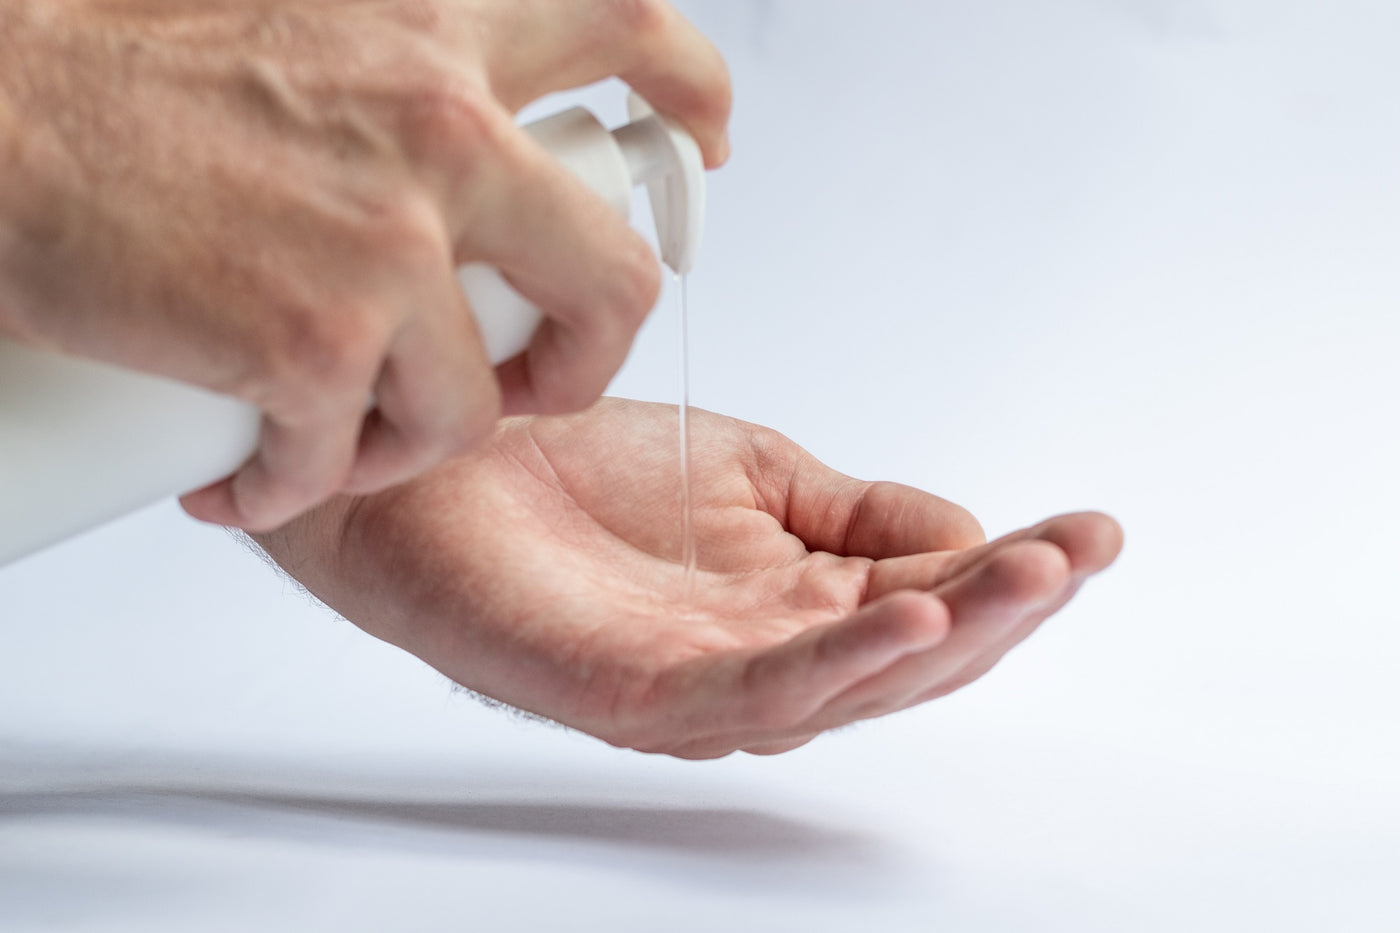 Männerhand, die transparente Flüssigseife aus einem Dosierspender in die Handflächen giesst.